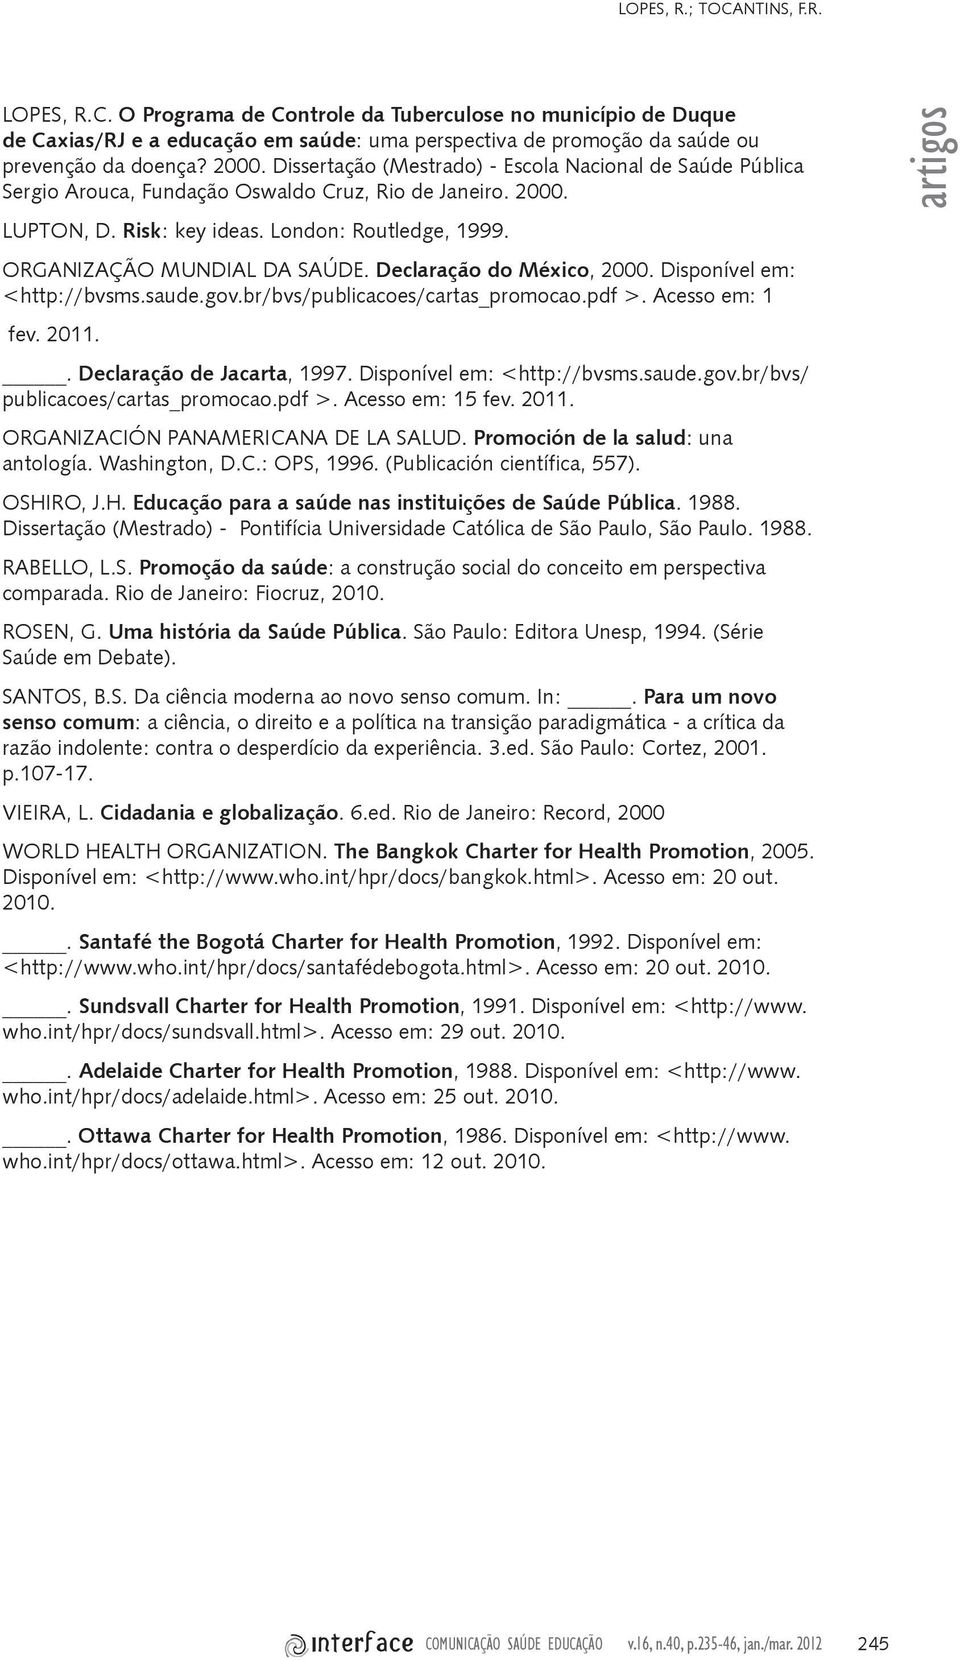 ORGANIZAÇÃO MUNDIAL DA SAÚDE. Declaração do México, 2000. Disponível em: <http://bvsms.saude.gov.br/bvs/publicacoes/cartas_promocao.pdf >. Acesso em: 1 fev. 2011.. Declaração de Jacarta, 1997.